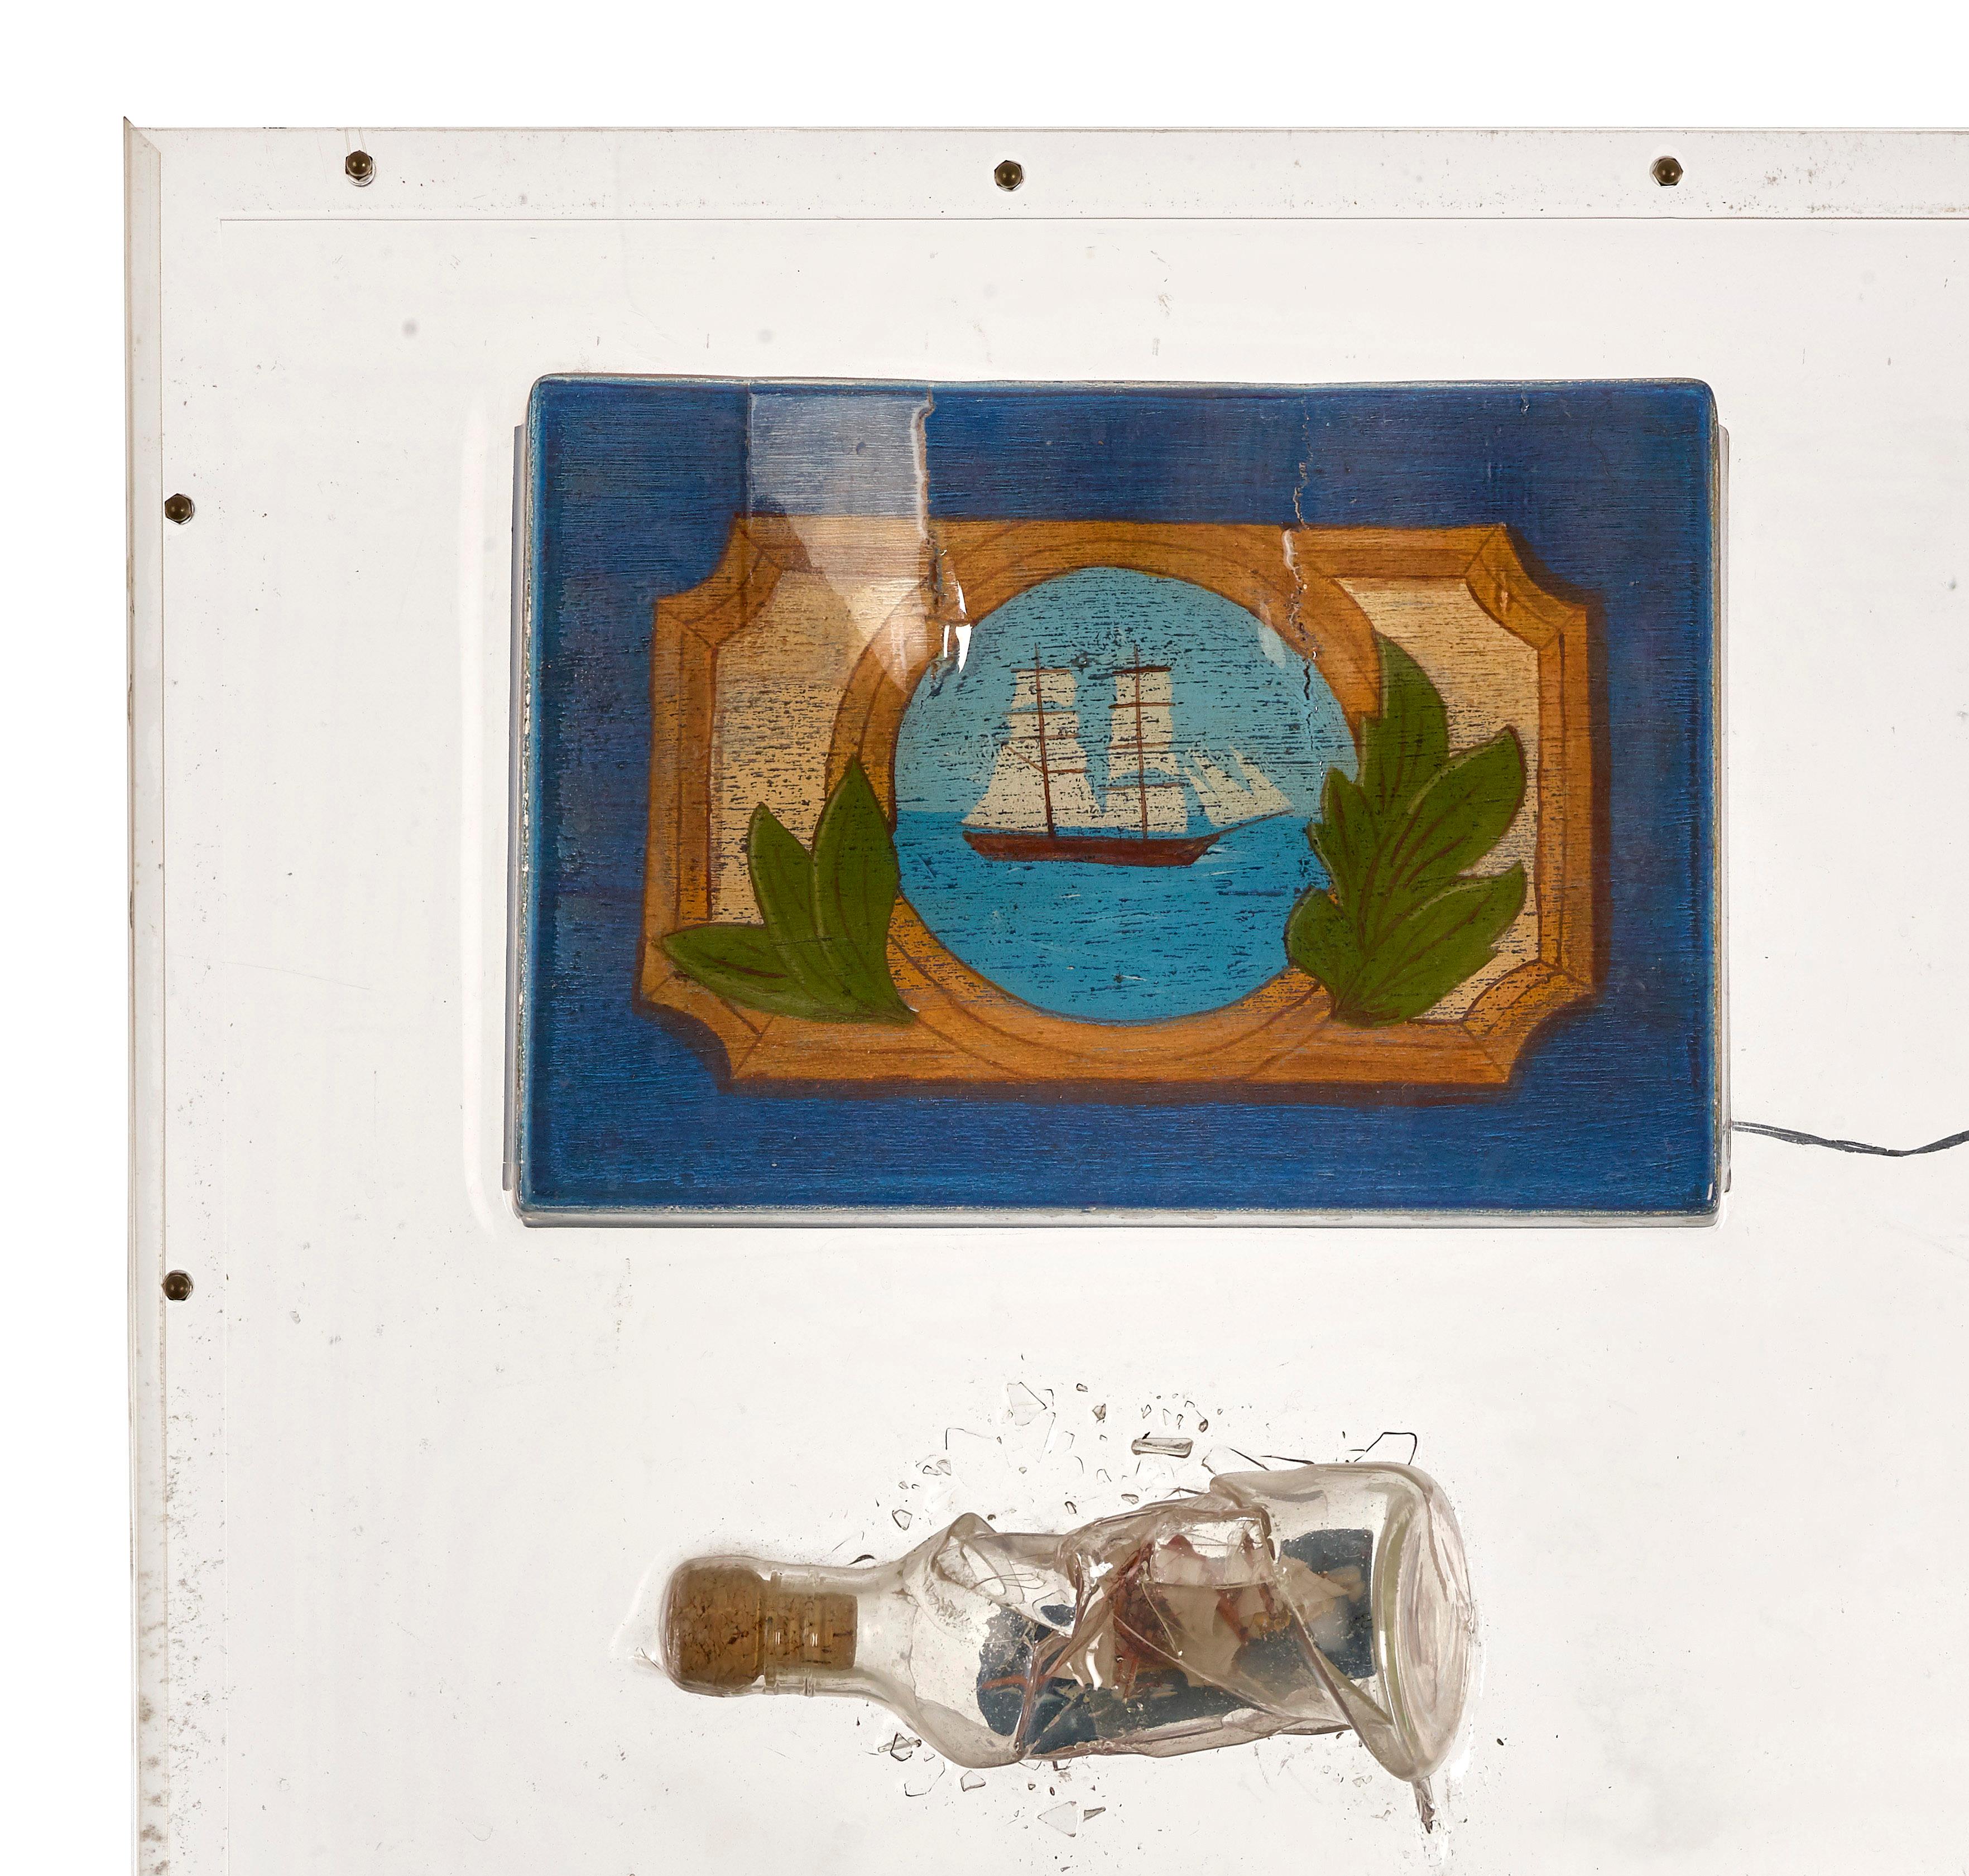 Drunken Boat, Boot (Zeitgenössisch), Mixed Media Art, von Martin Engler